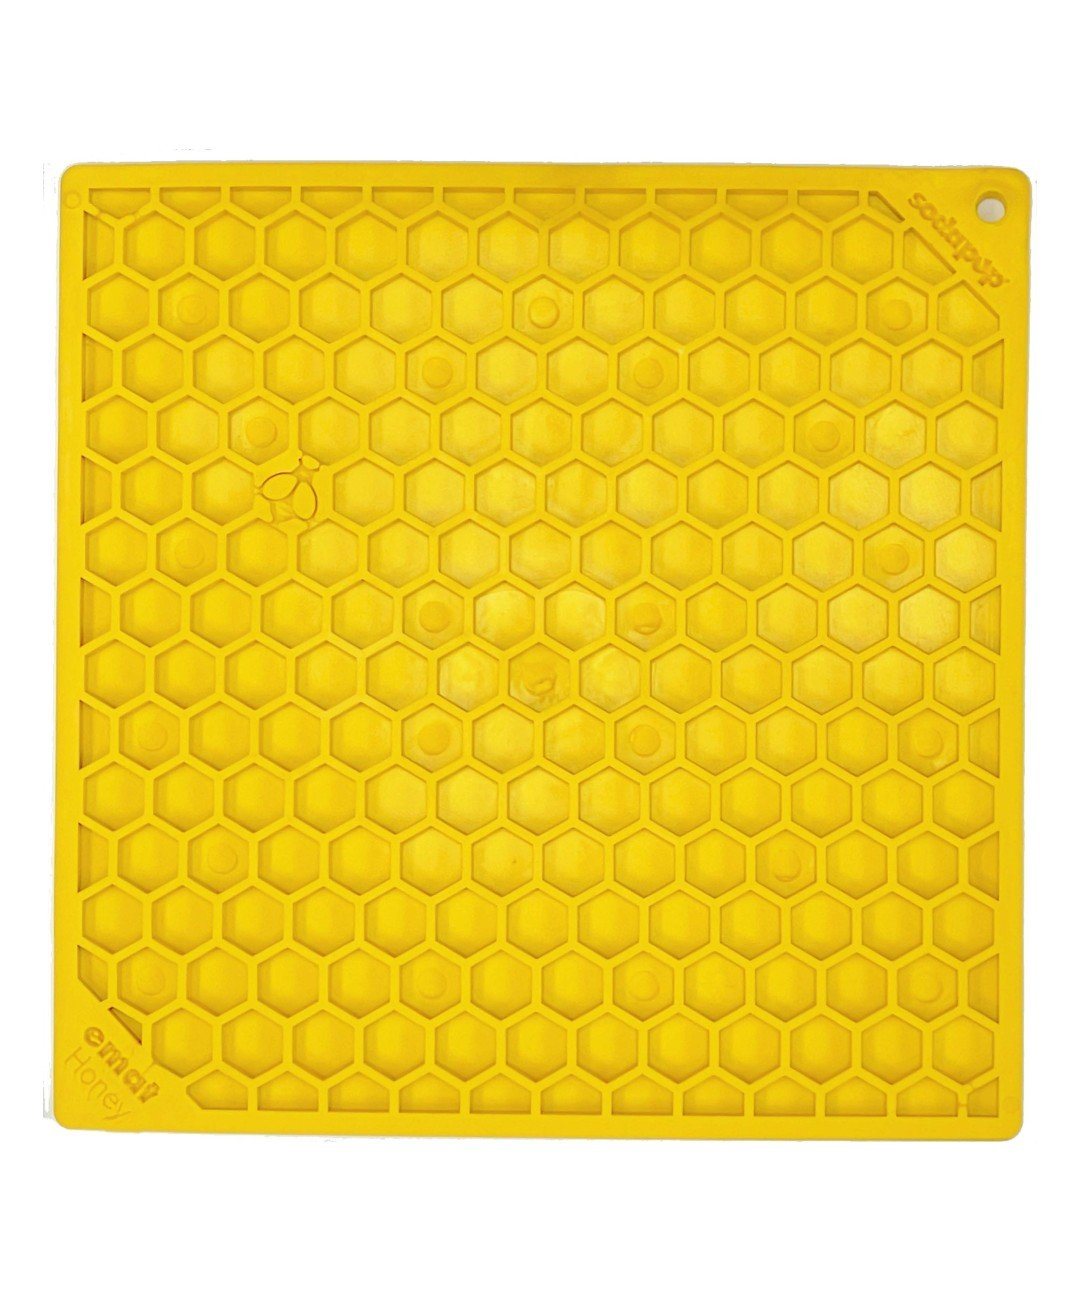 https://store.rover.com/cdn/shop/products/sodapup-honeycomb-enrichment-lick-mat-lickmat-sodapup-l-433479_1400x.jpg?v=1651872539